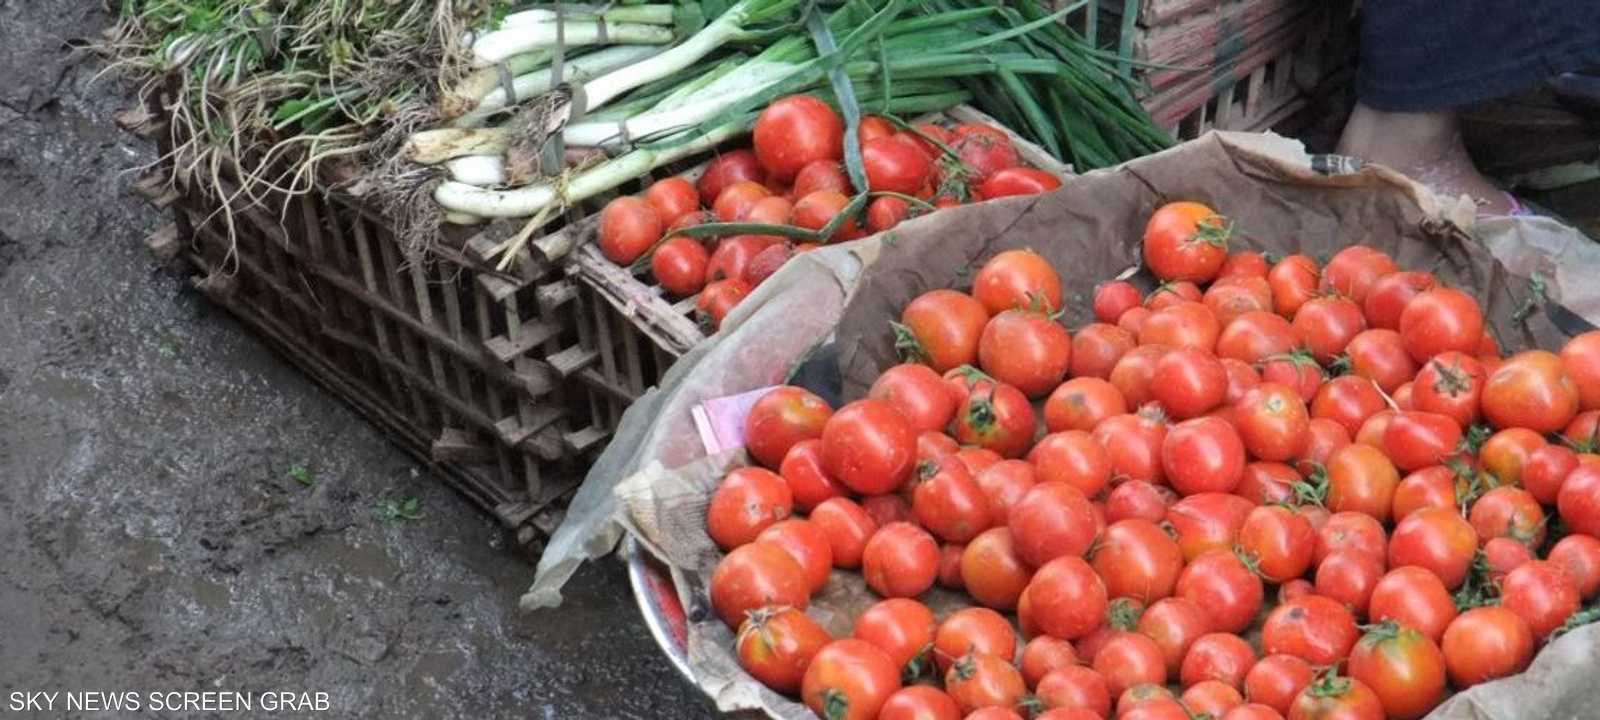 محصول البندورة في مصر معروضا في سوق شعبي